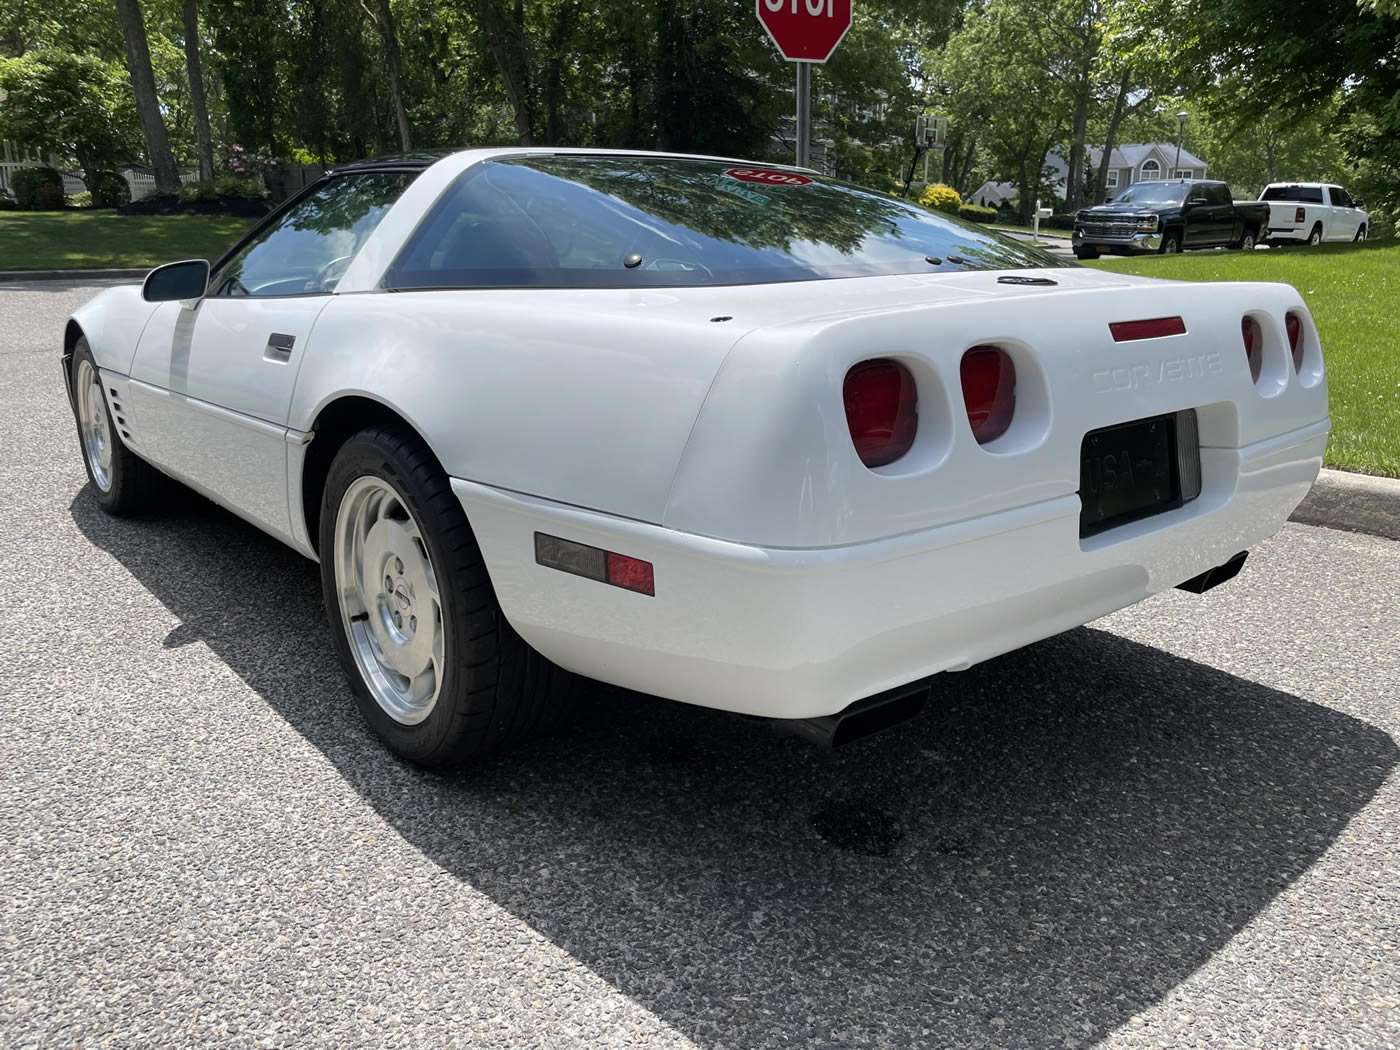 1994 Corvette Coupe in Arctic White